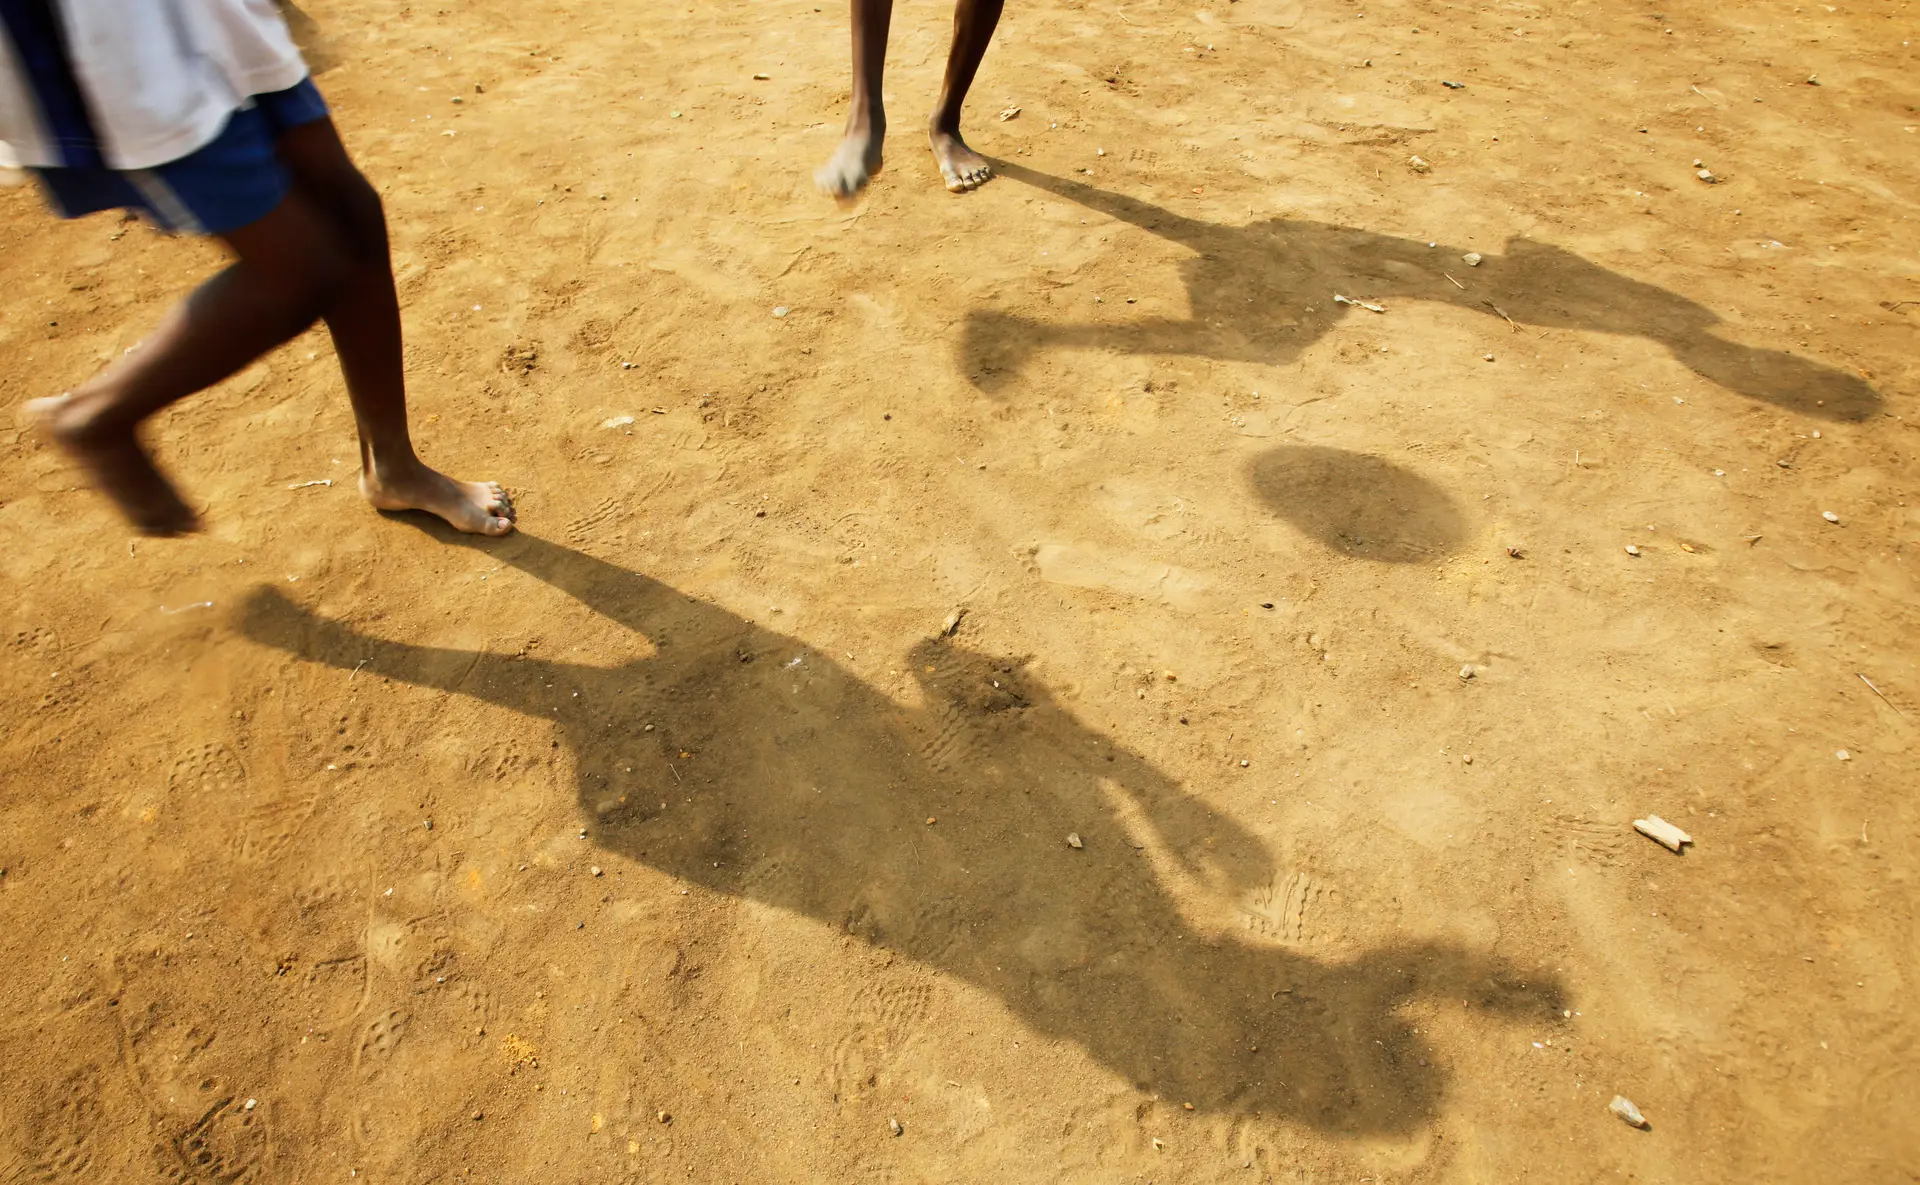 Morreram 12 crianças de uma misteriosa doença na Costa do Marfim